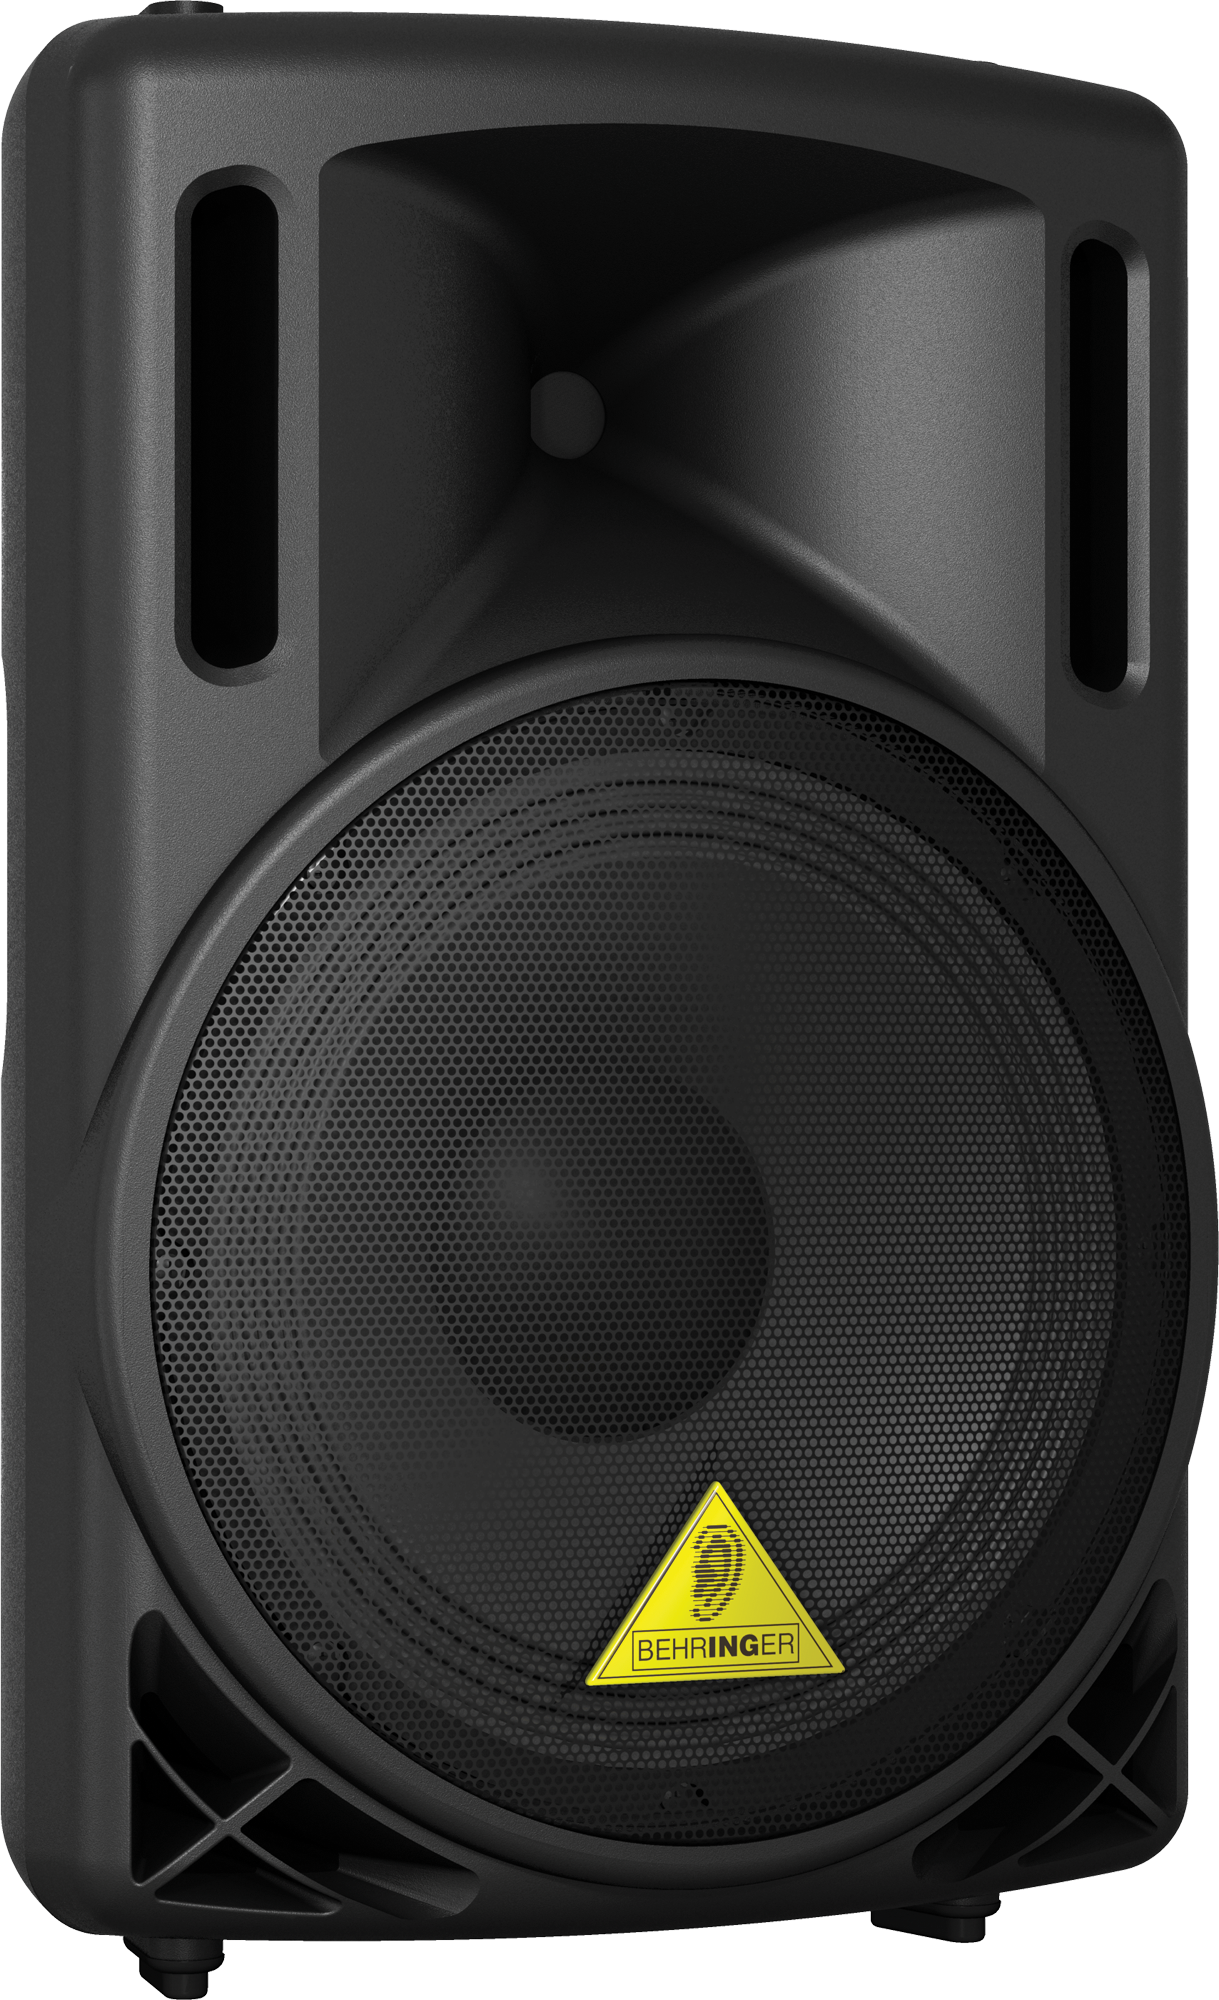 Behringer Eurolive B2 Series Speaker PNG Transparent Image